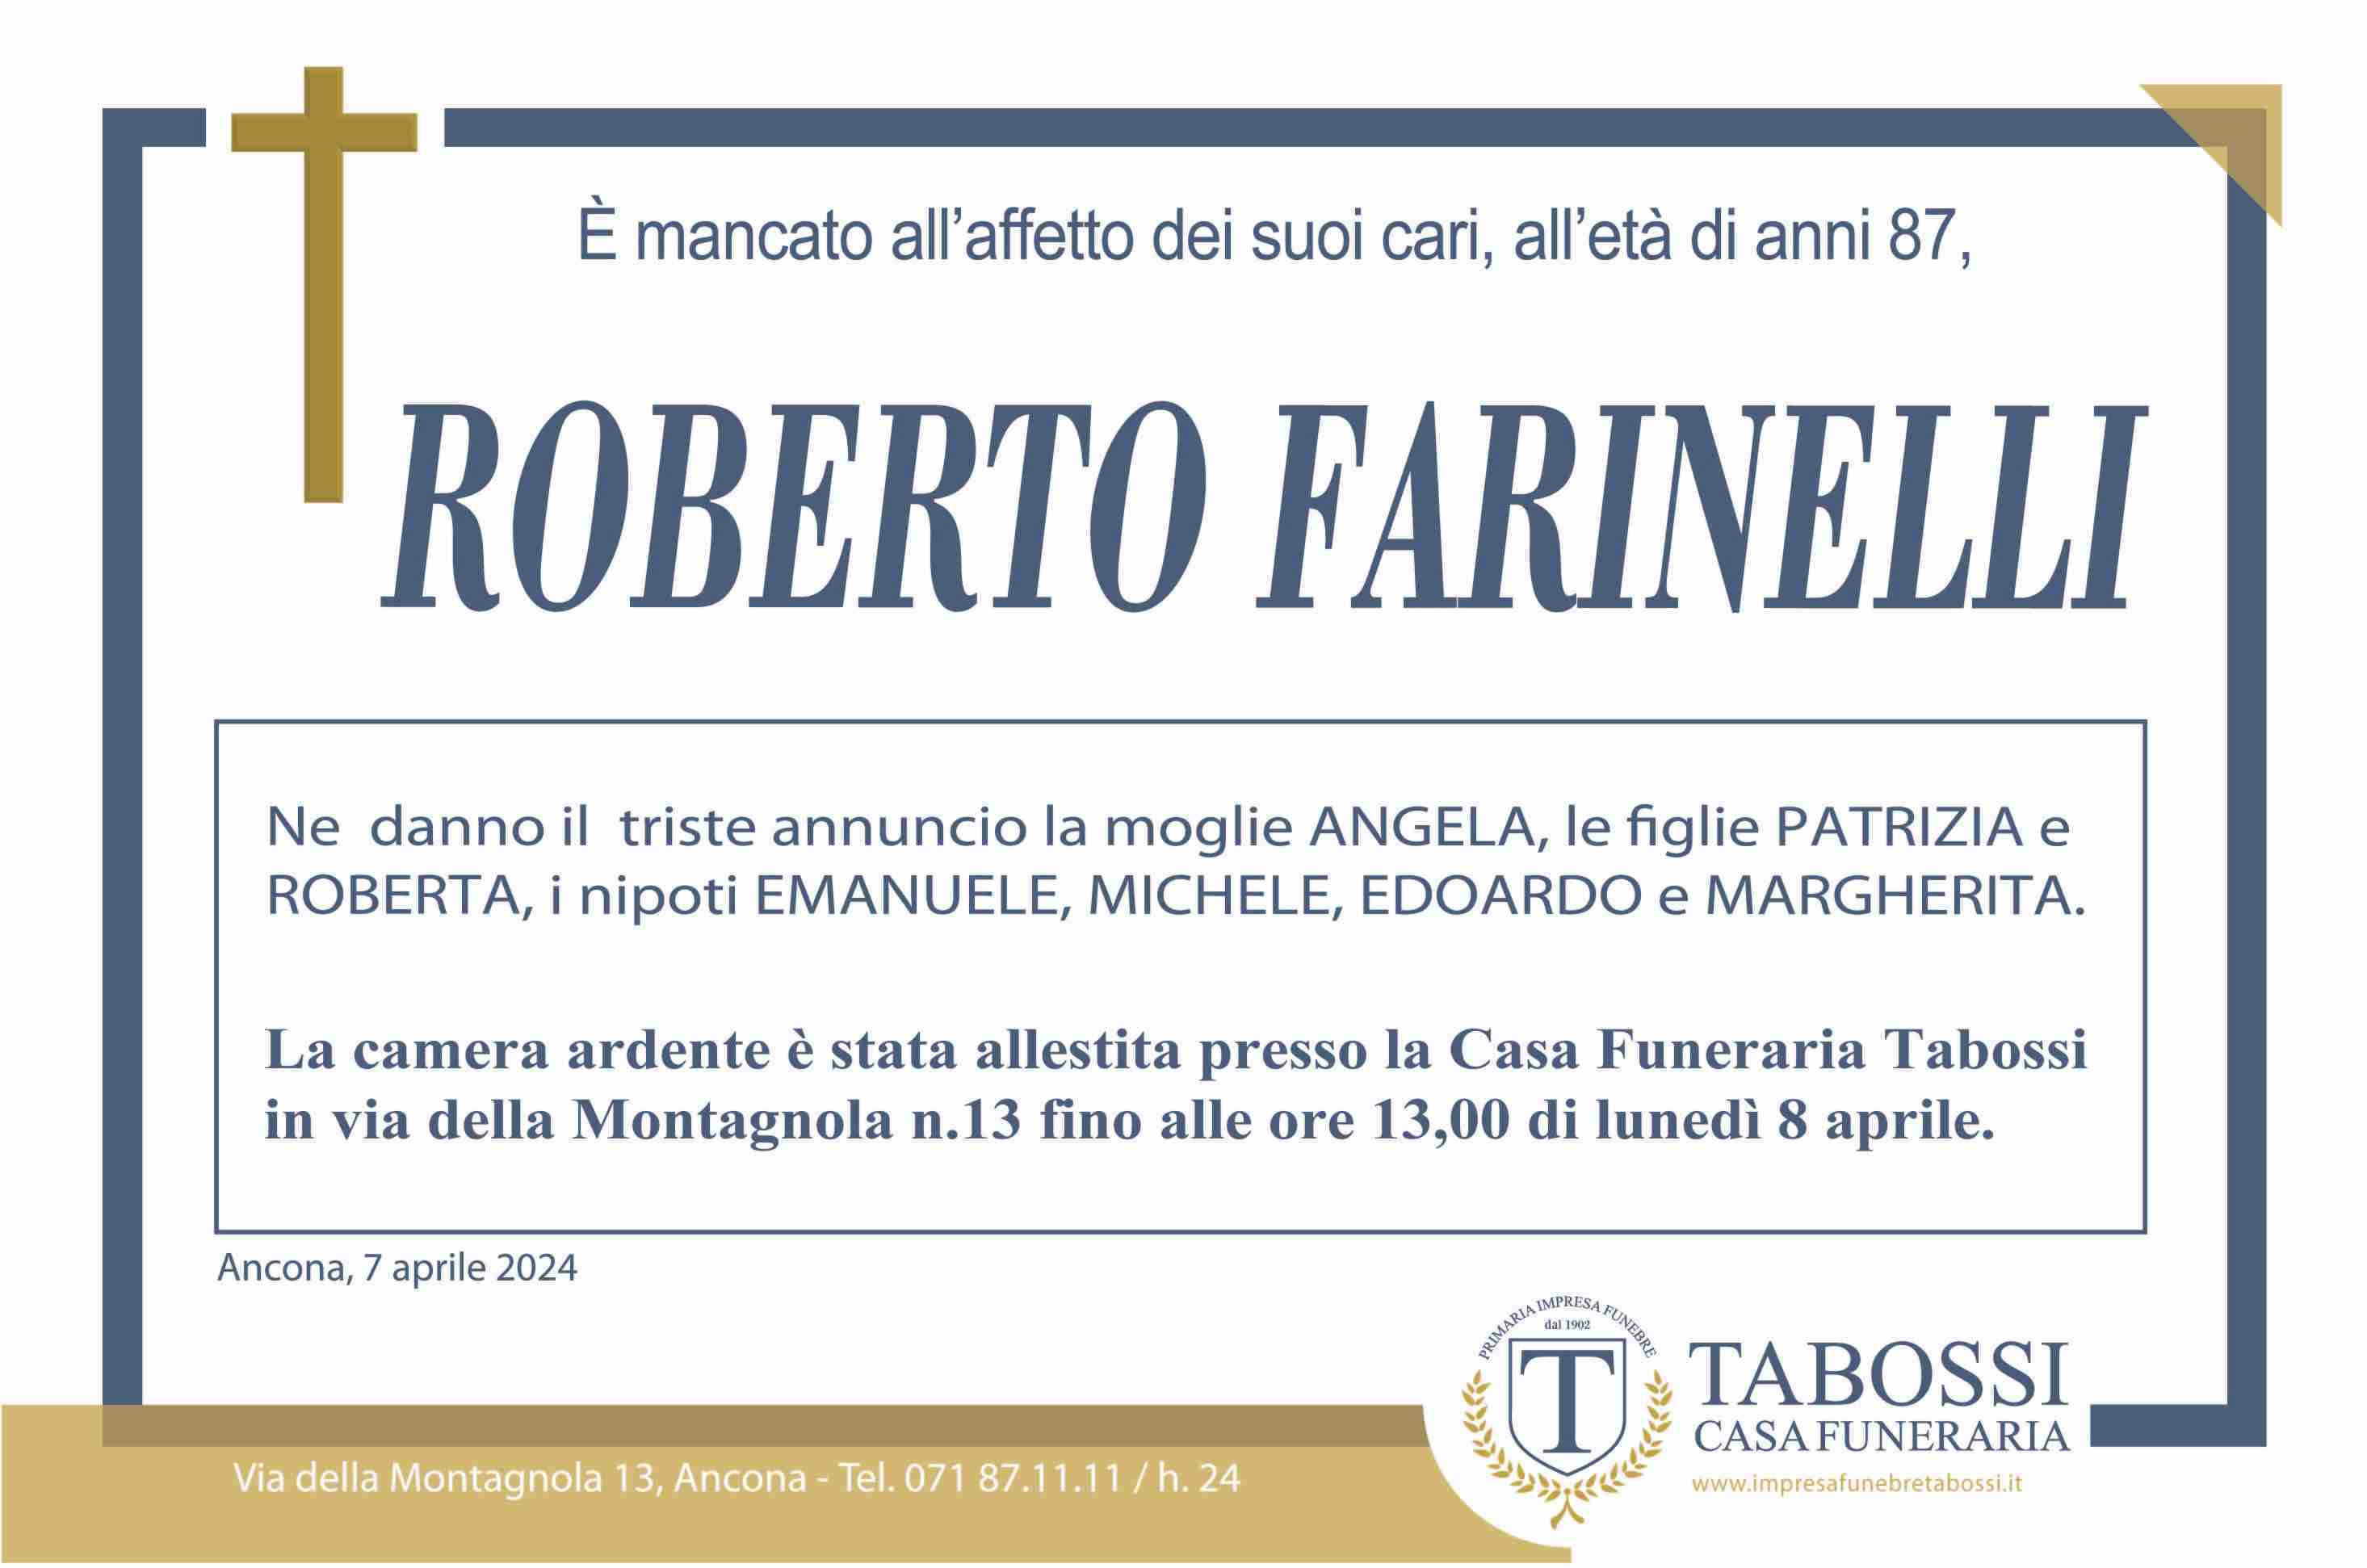 Roberto Farinelli